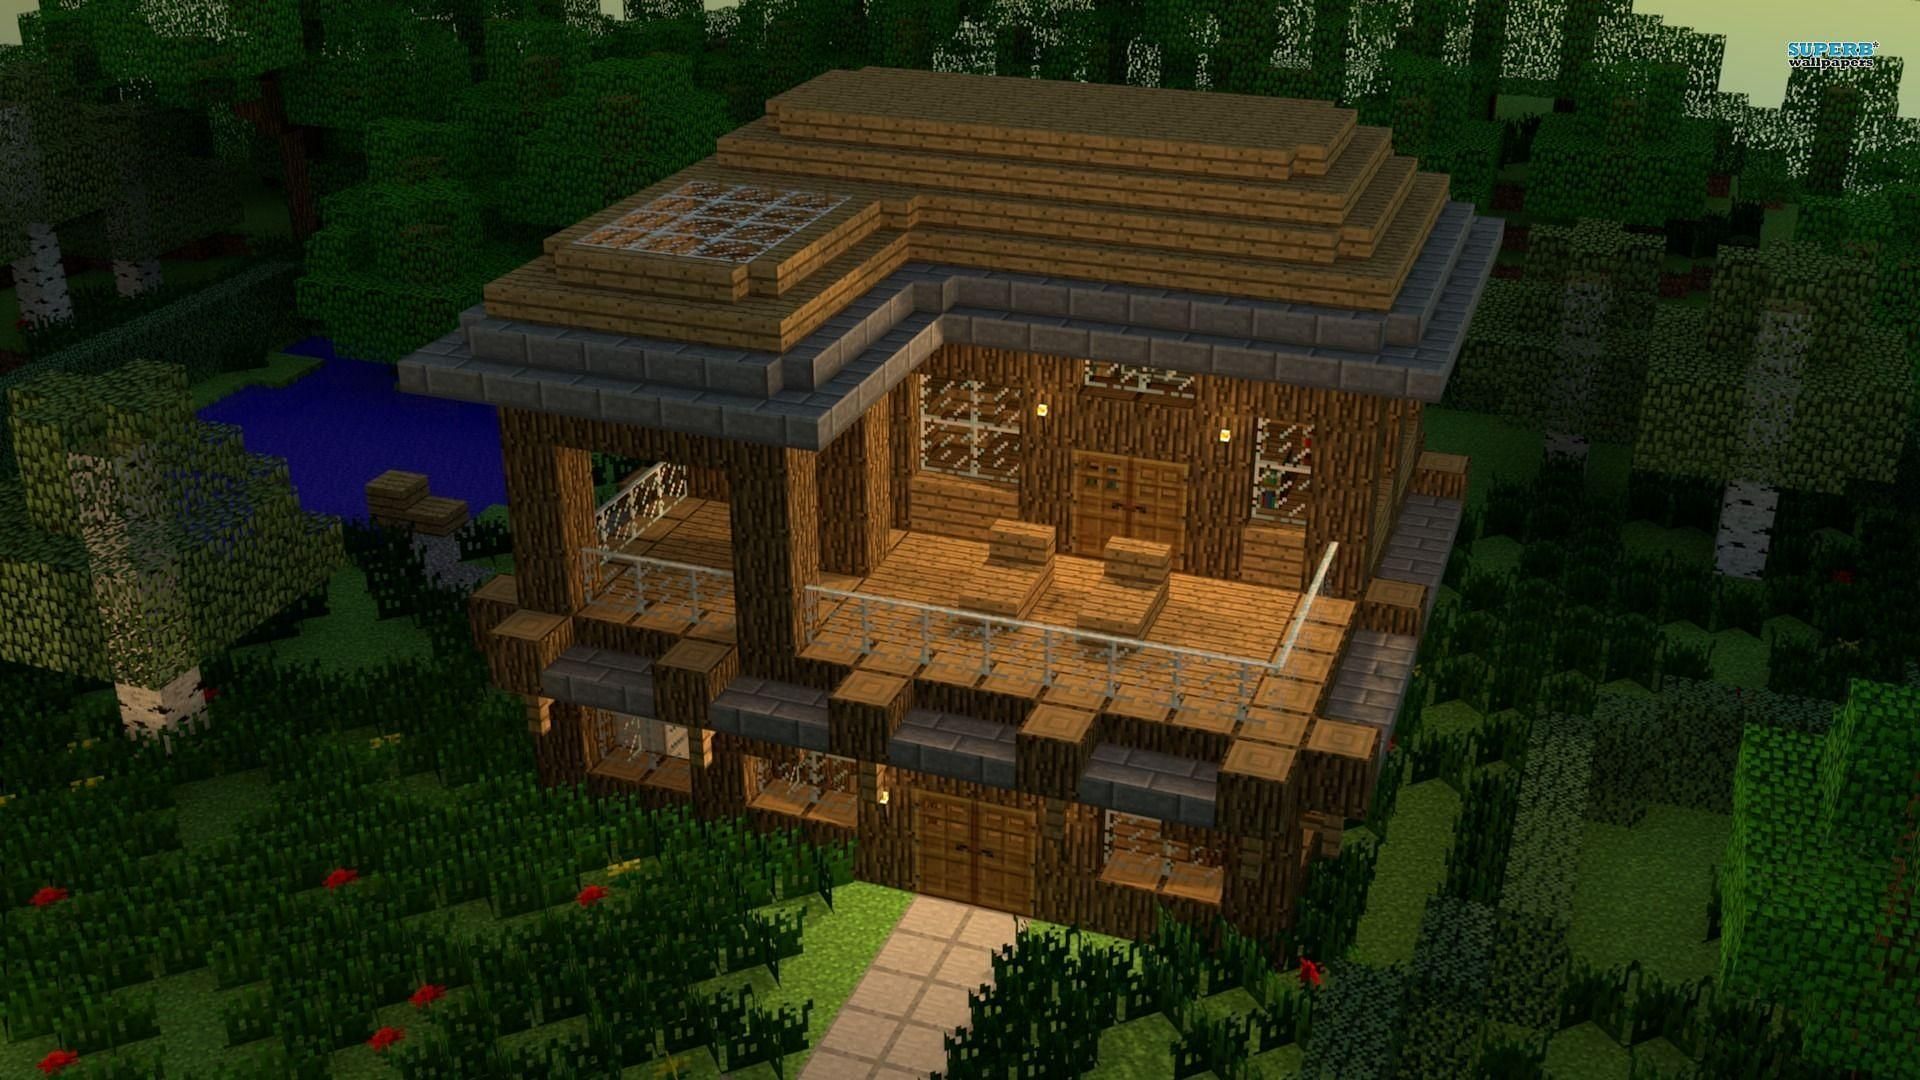 Wooden hut in Minecraft (Image via Minecraft)